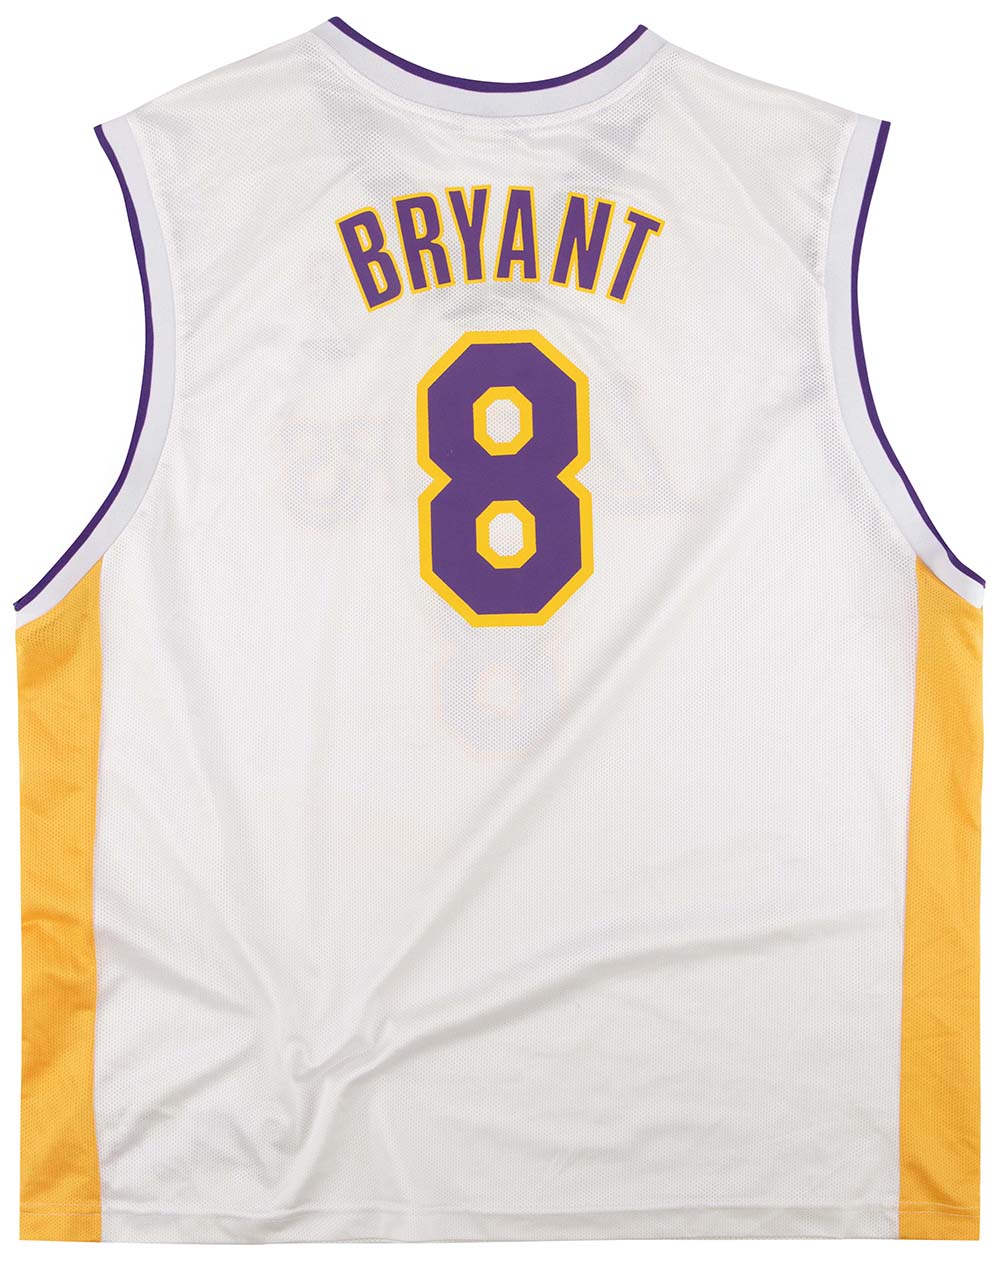 100% Authentic Kobe Bryant Reebok 04 05 HWC Lakers Jersey Size 44 L XL Mens